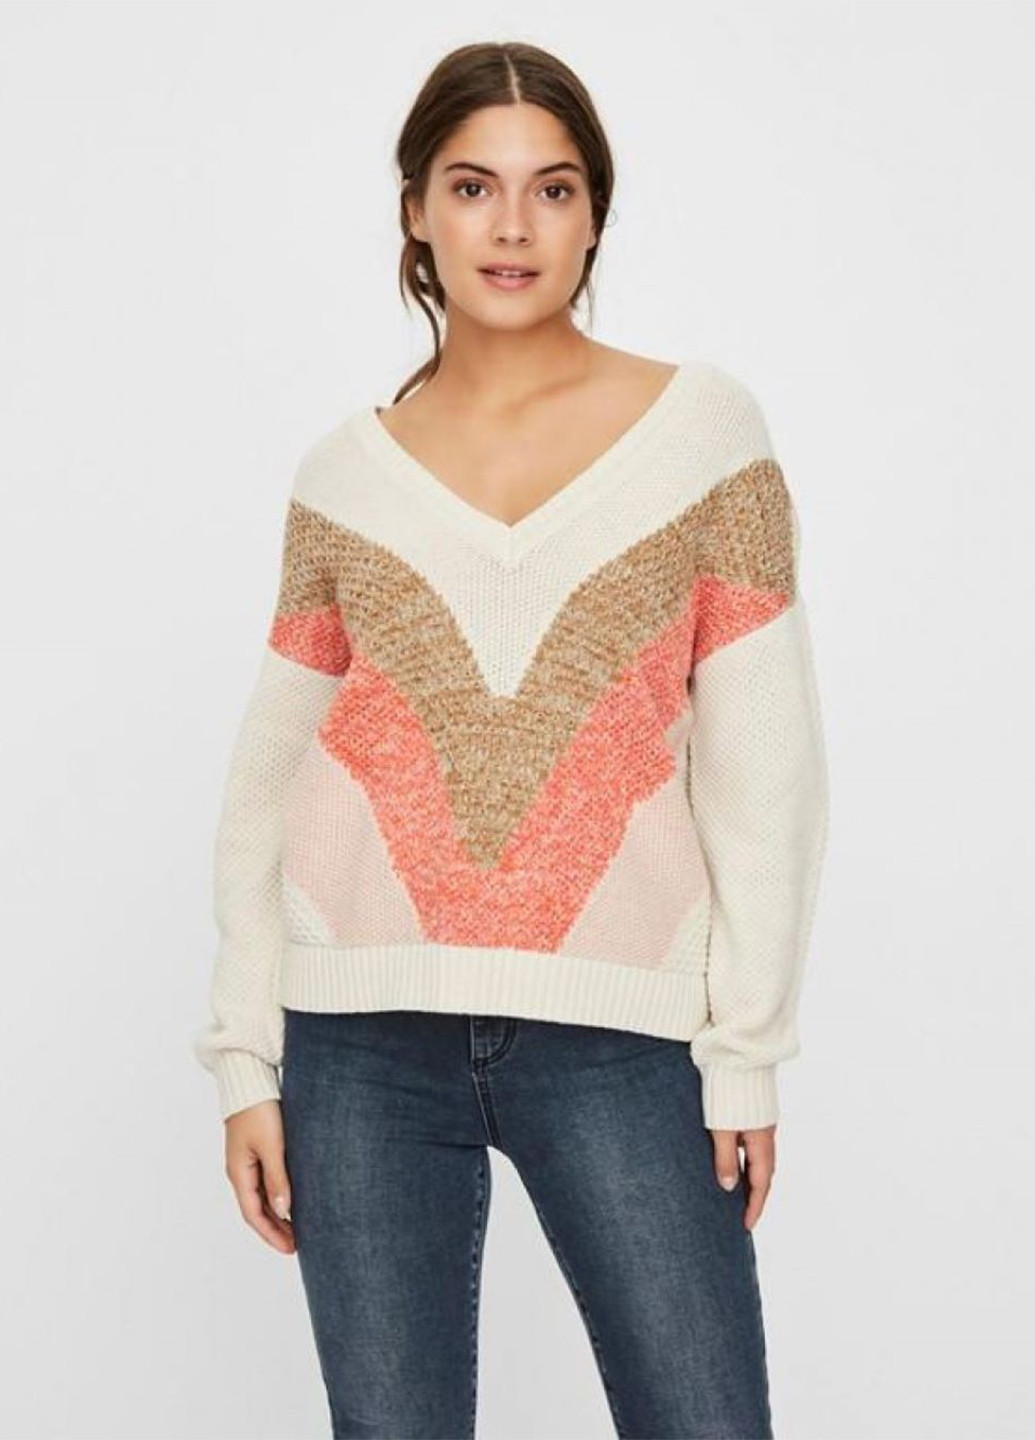 Комбинированный демисезонный пуловер пуловер Vero Moda